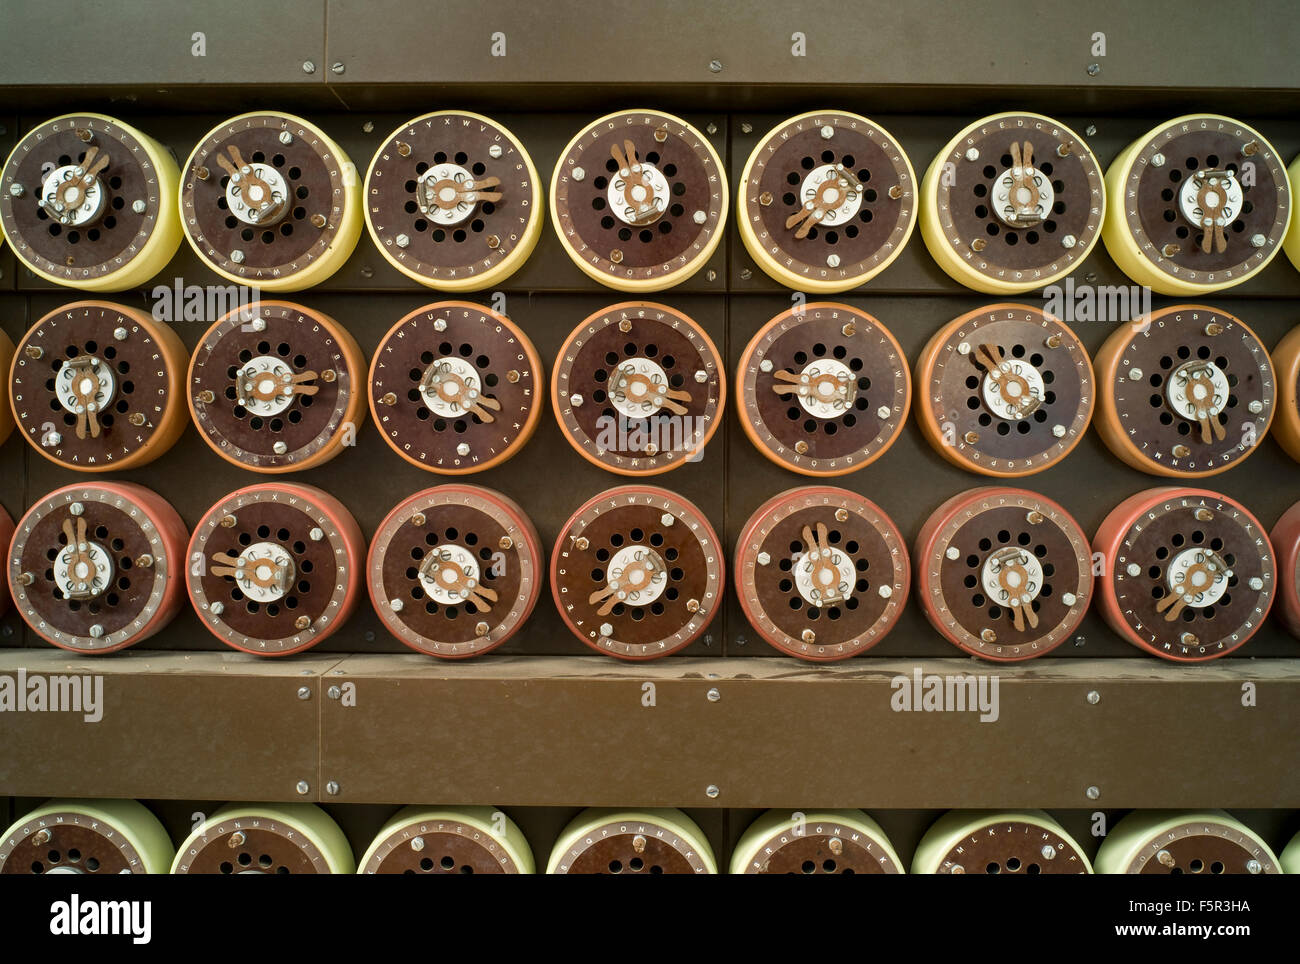 Bletchley Park Bombe Code Cracking Maschine verwendet, um die deutschen Militär Enigma Codes im Zweiten Weltkrieg zu brechen - für einen Film nachgebildet, da keine Originale existieren. Stockfoto